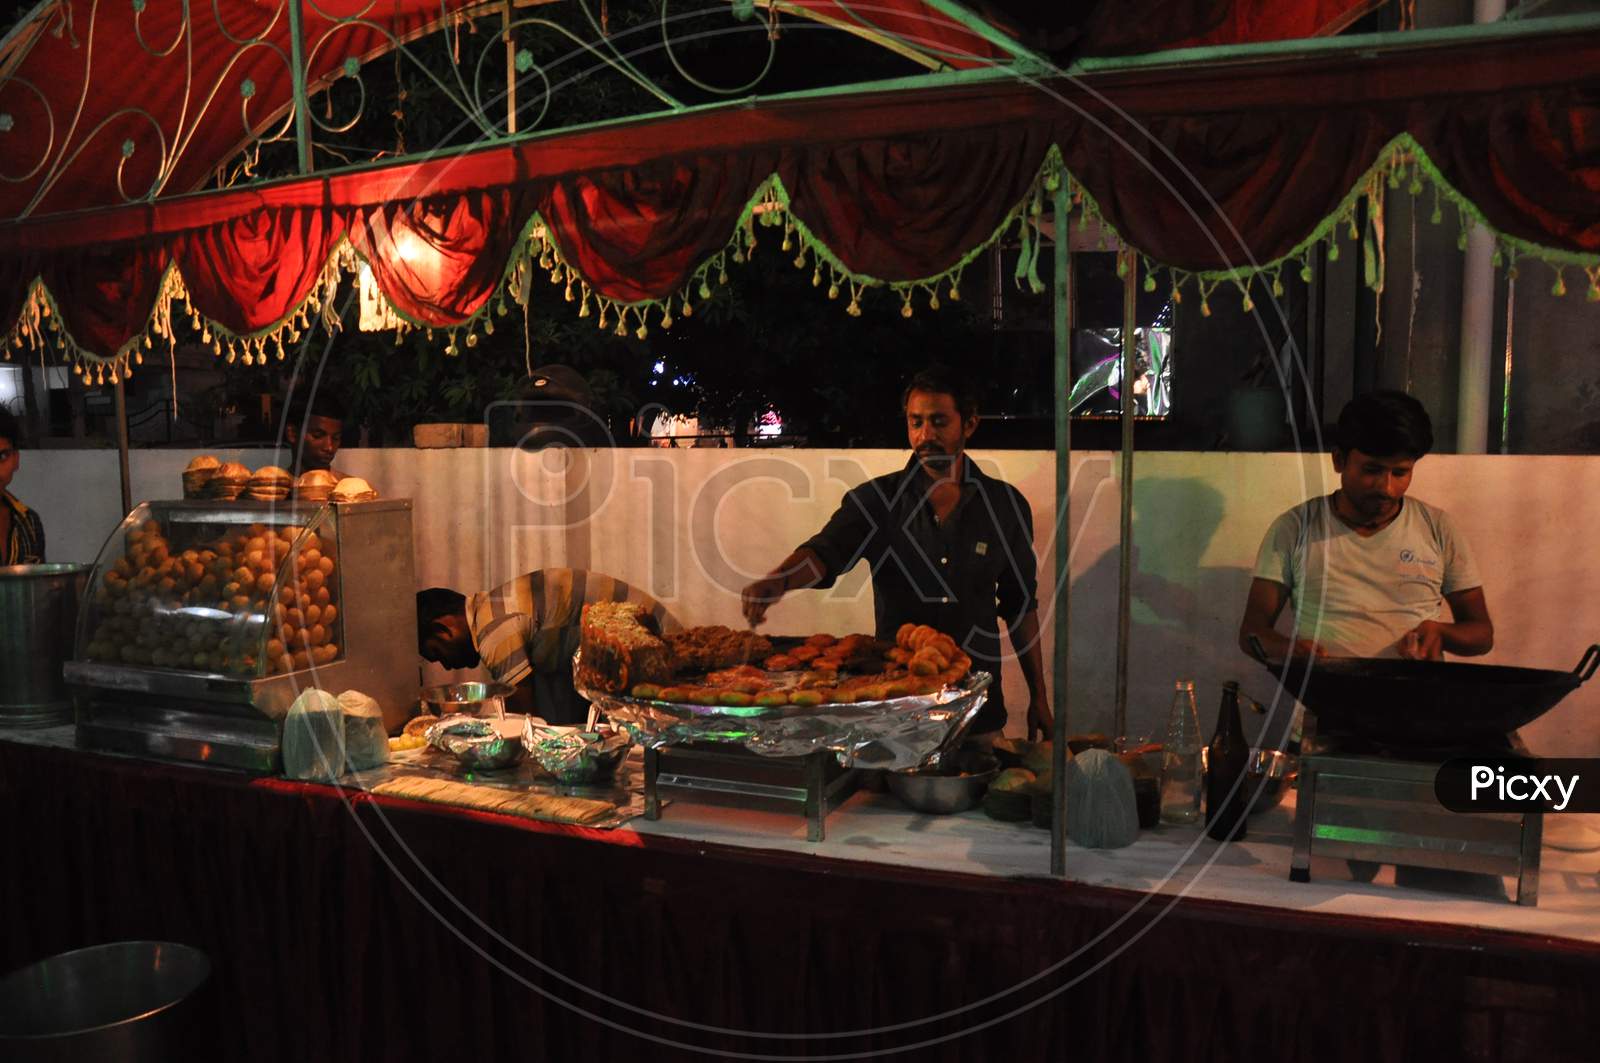 A street food vendor making Aaloo Chaat - An Indian street food